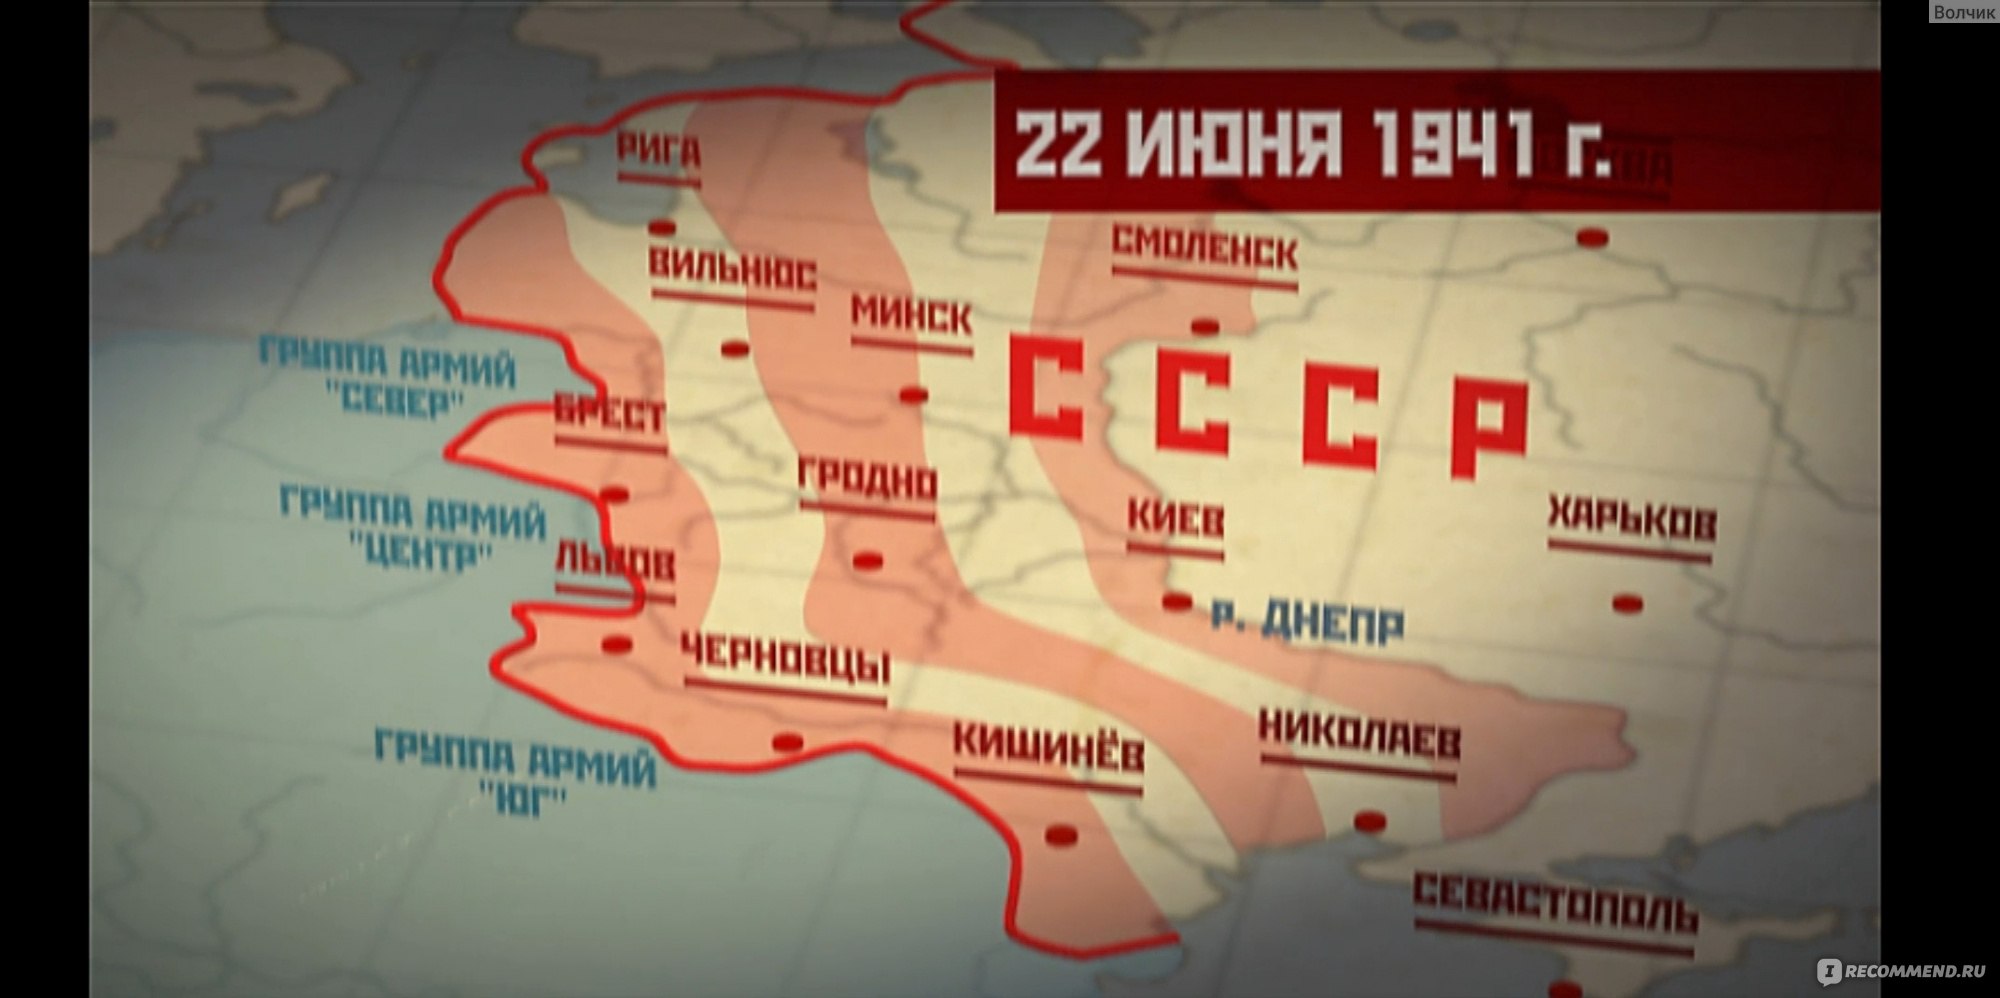 22 июня киев бомбили. 22 Июня Ровно в 4 часа. 22 Июня Ровно в 4 часа начало войны. 22 Июня Ровно в 4 часа Киев бомбили.